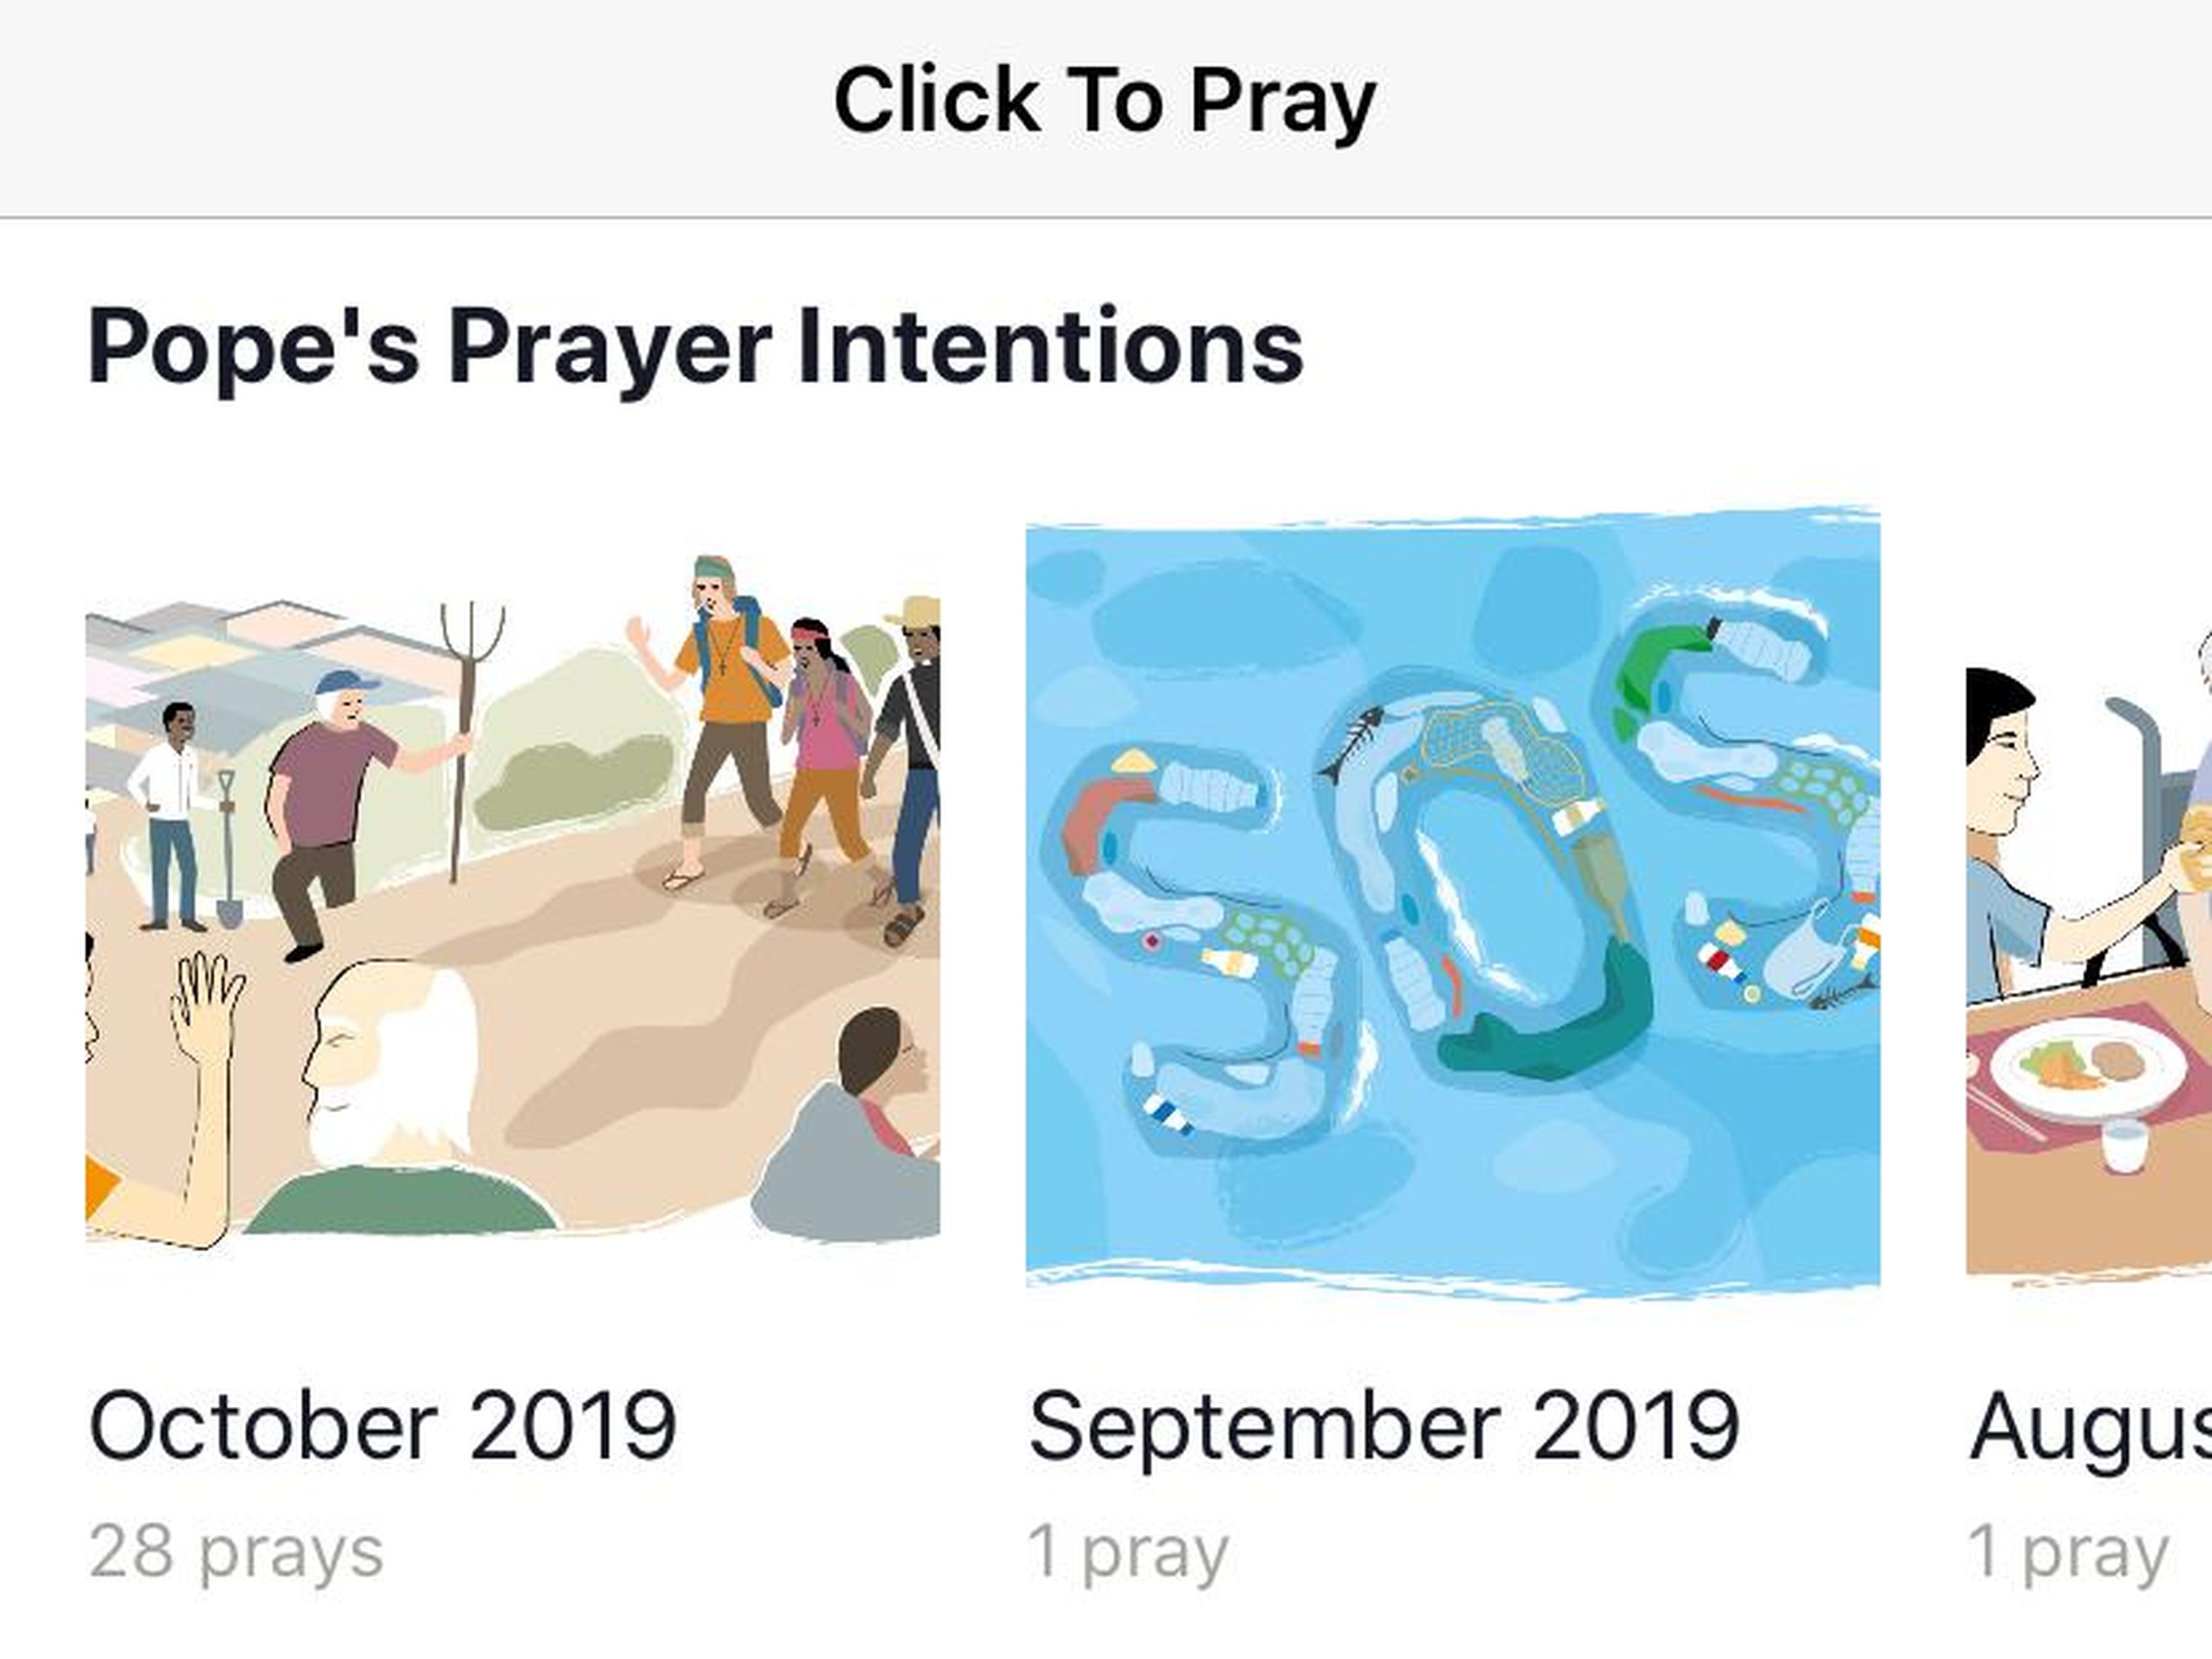 Dentro de la aplicación, puedes ver las intenciones de oración del Papa Francisco, y rezar por ellas tú mismo.